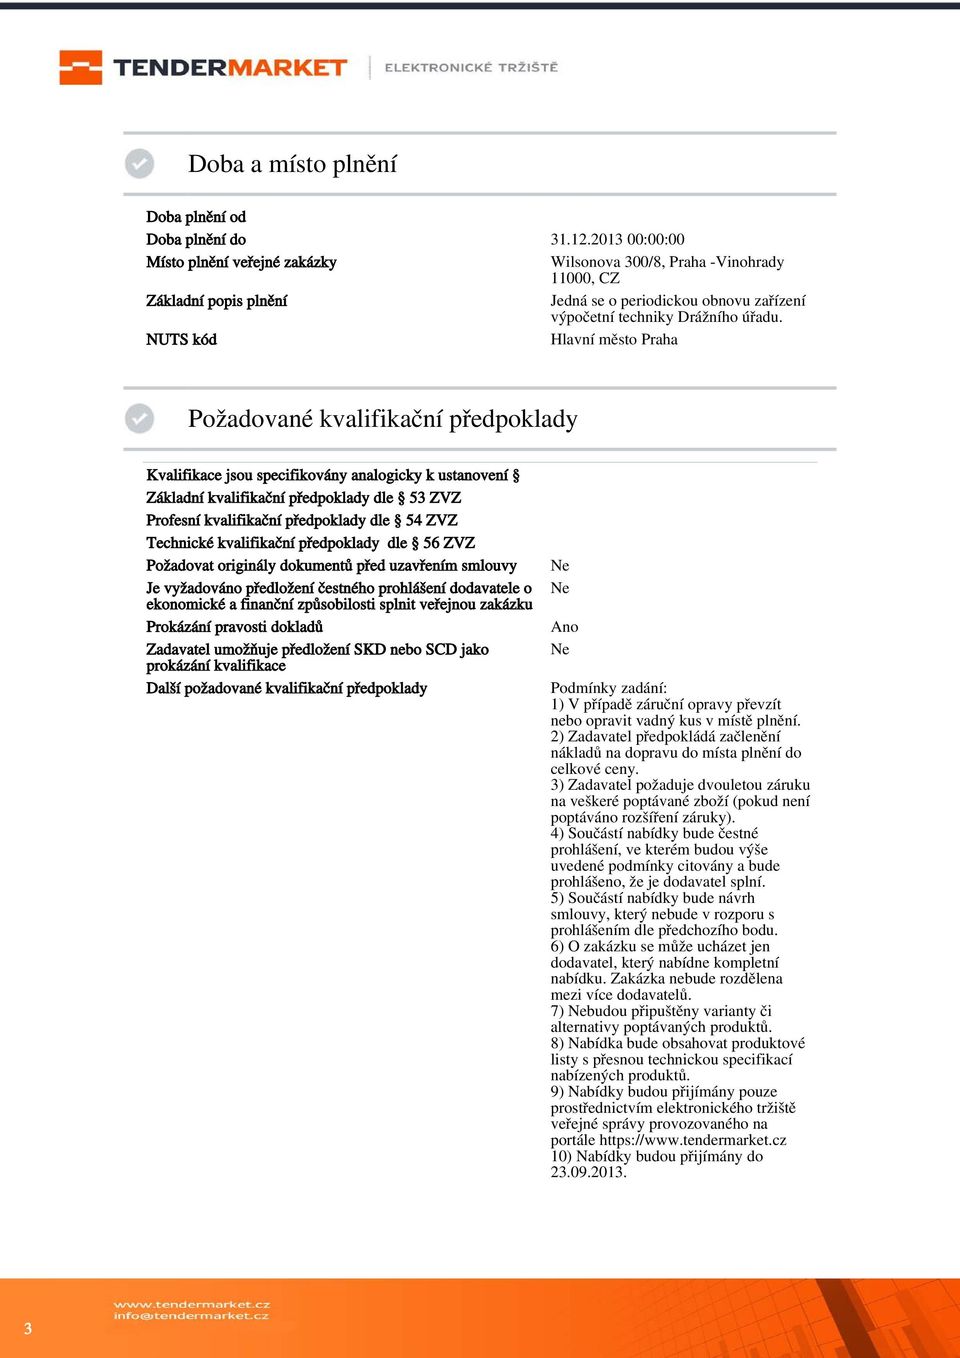 NUTS kód Hlavní město Praha Požadované kvalifikační předpoklady Kvalifikace jsou specifikovány analogicky k ustanovení Základní kvalifikační předpoklady dle 53 ZVZ Profesní kvalifikační předpoklady